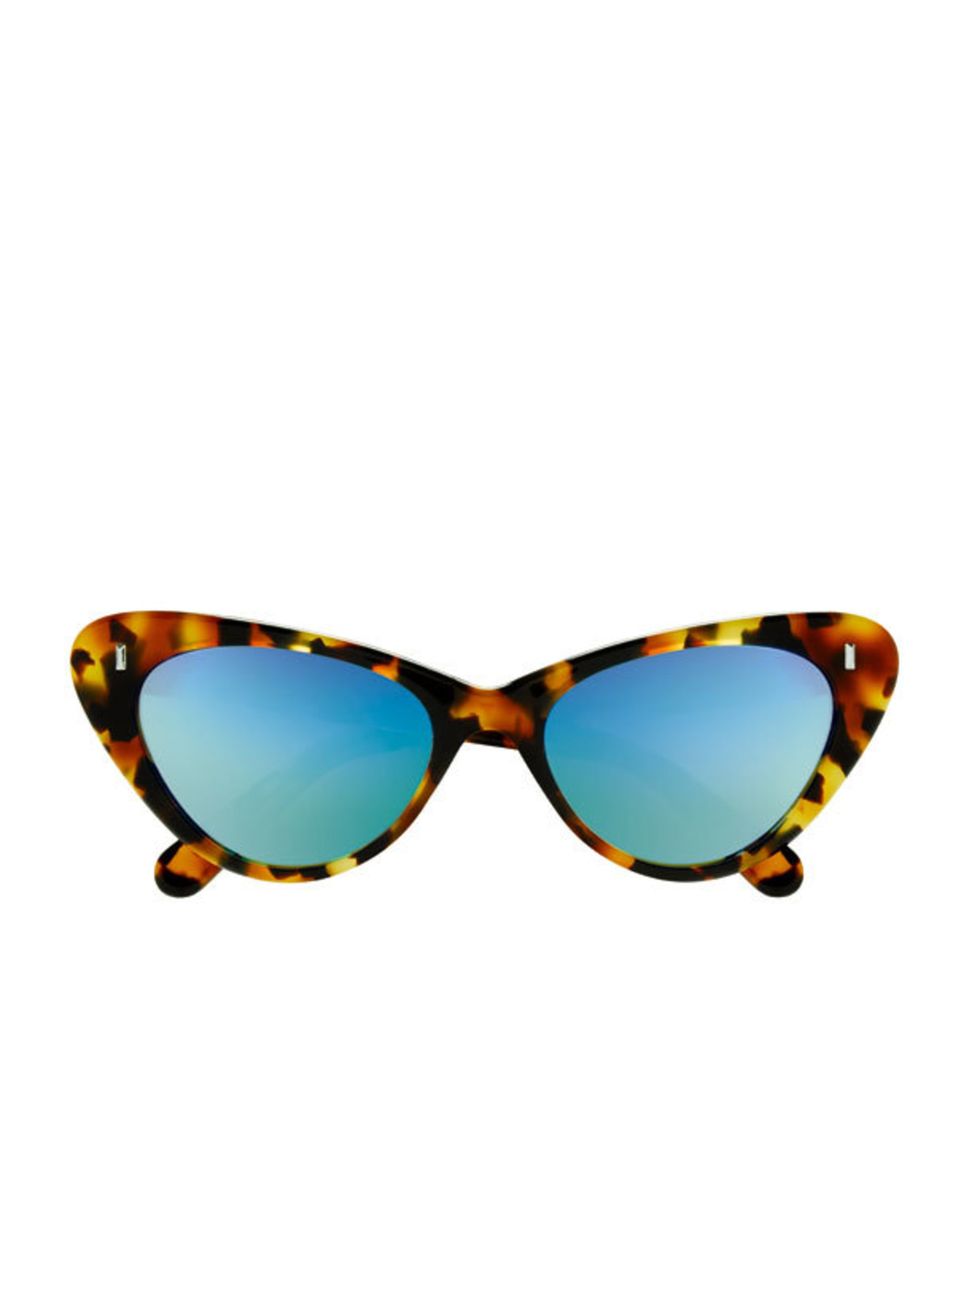 <p>Giles by Cutler And Gross tortoiseshell sunglasses, £350, at <a href="http://www.cutlerandgross.com/">Cutler And Gross</a></p>